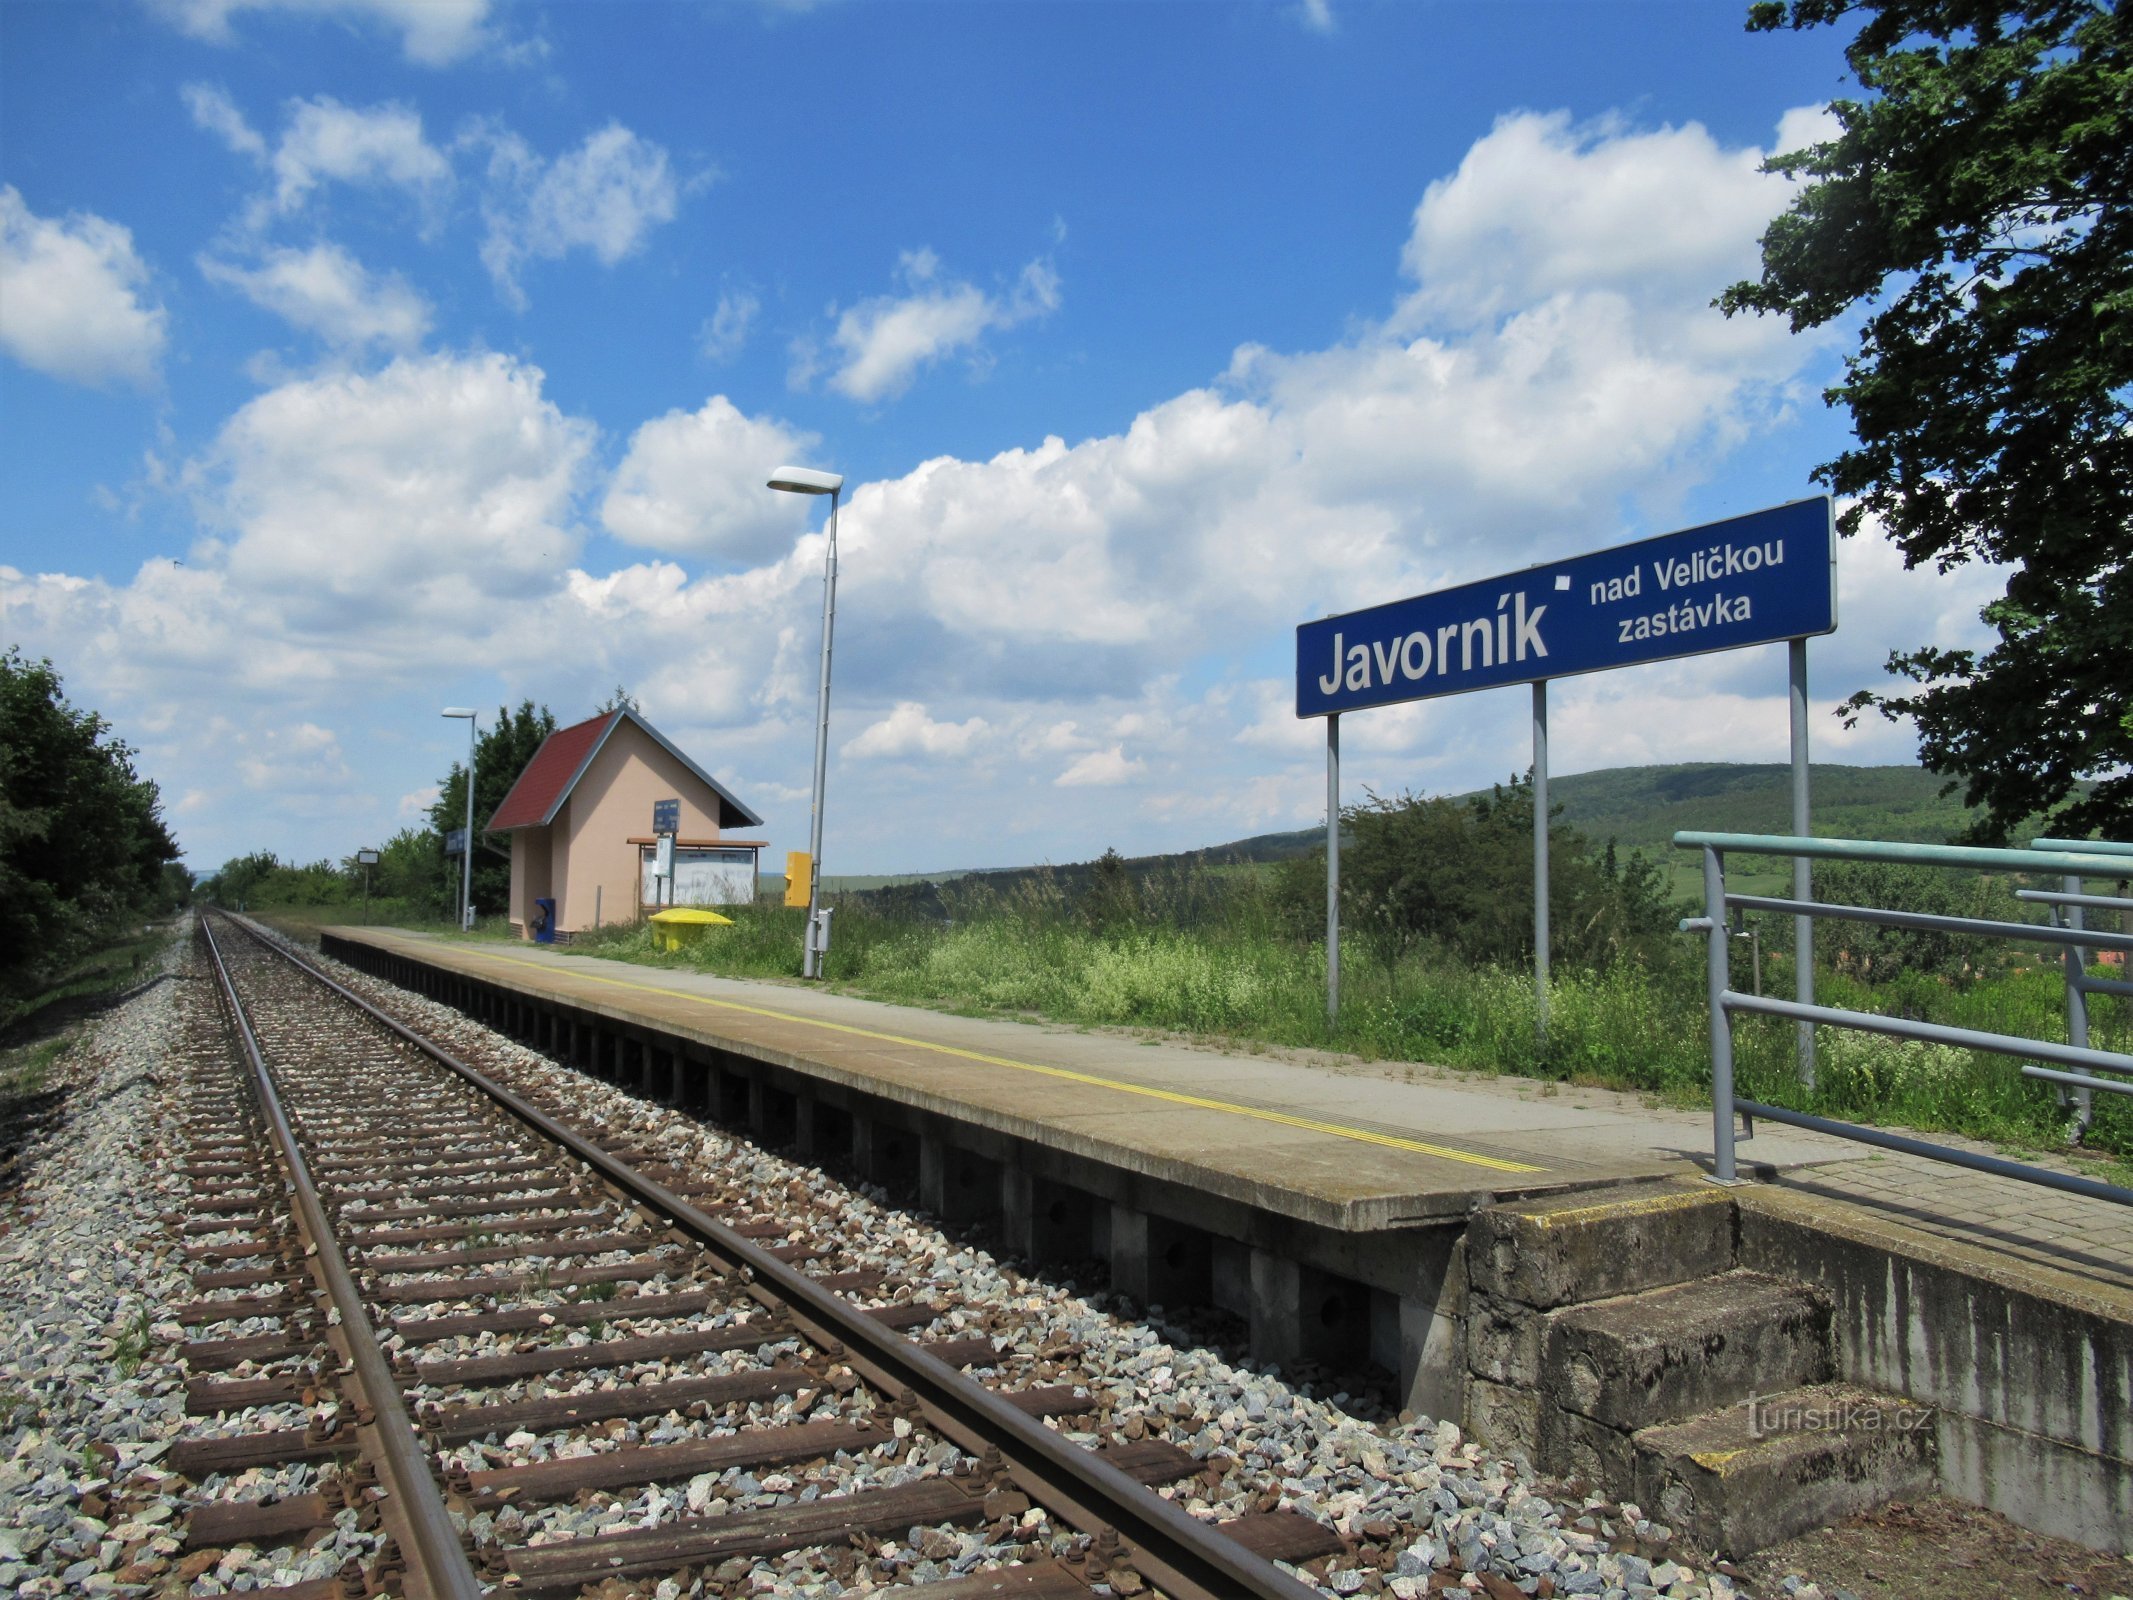 Železniční zastávka Javorník nad Veličkou